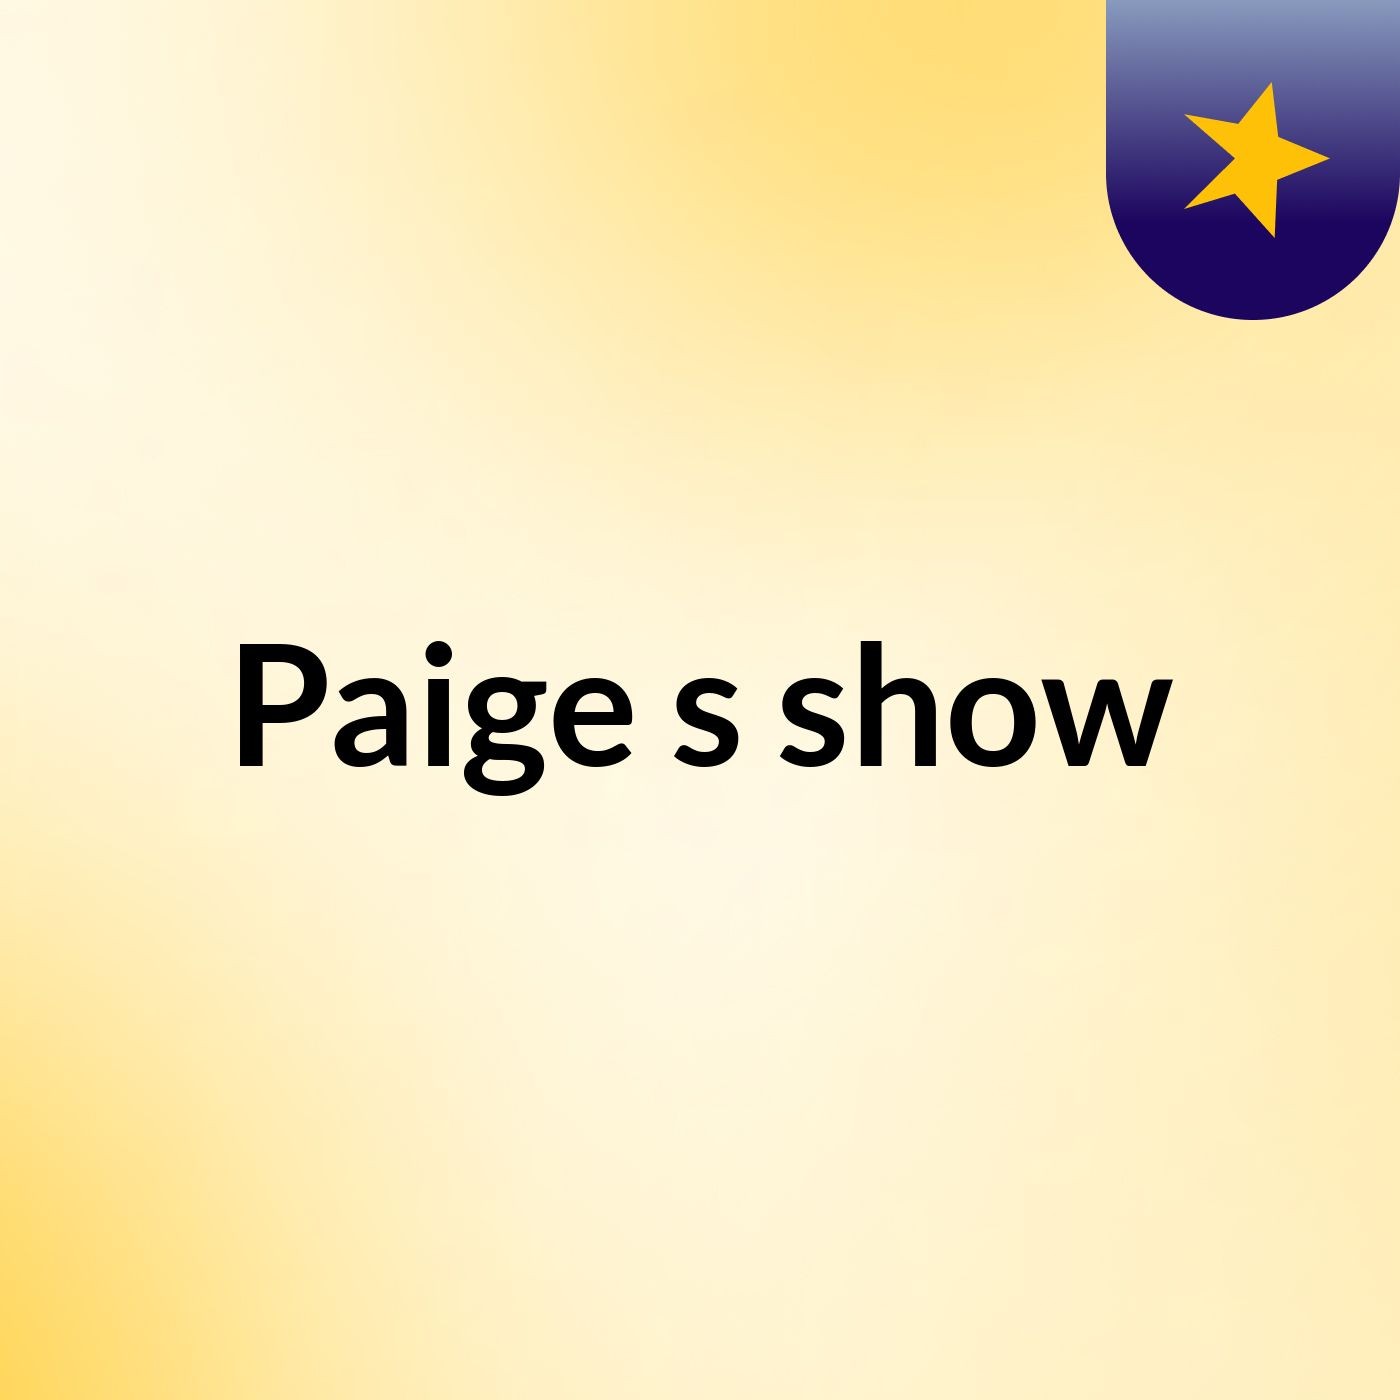 Paige's show